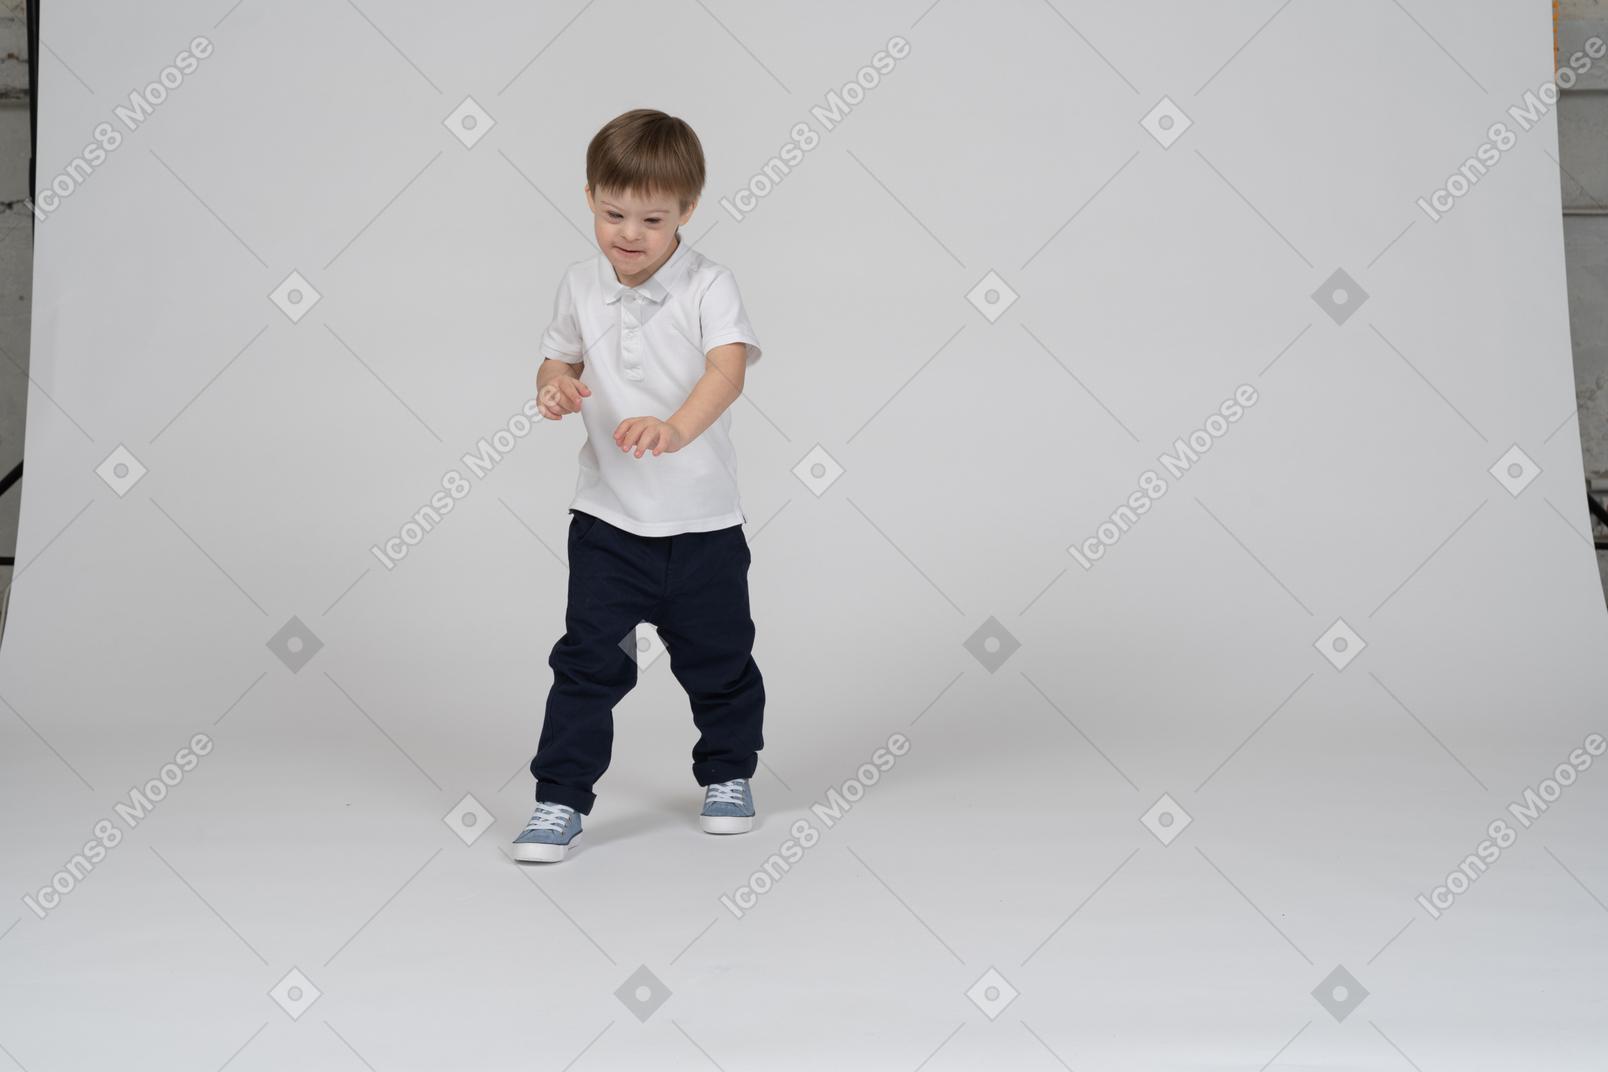 Vista frontal de un niño dando un paso adelante y mirando hacia abajo sonriendo